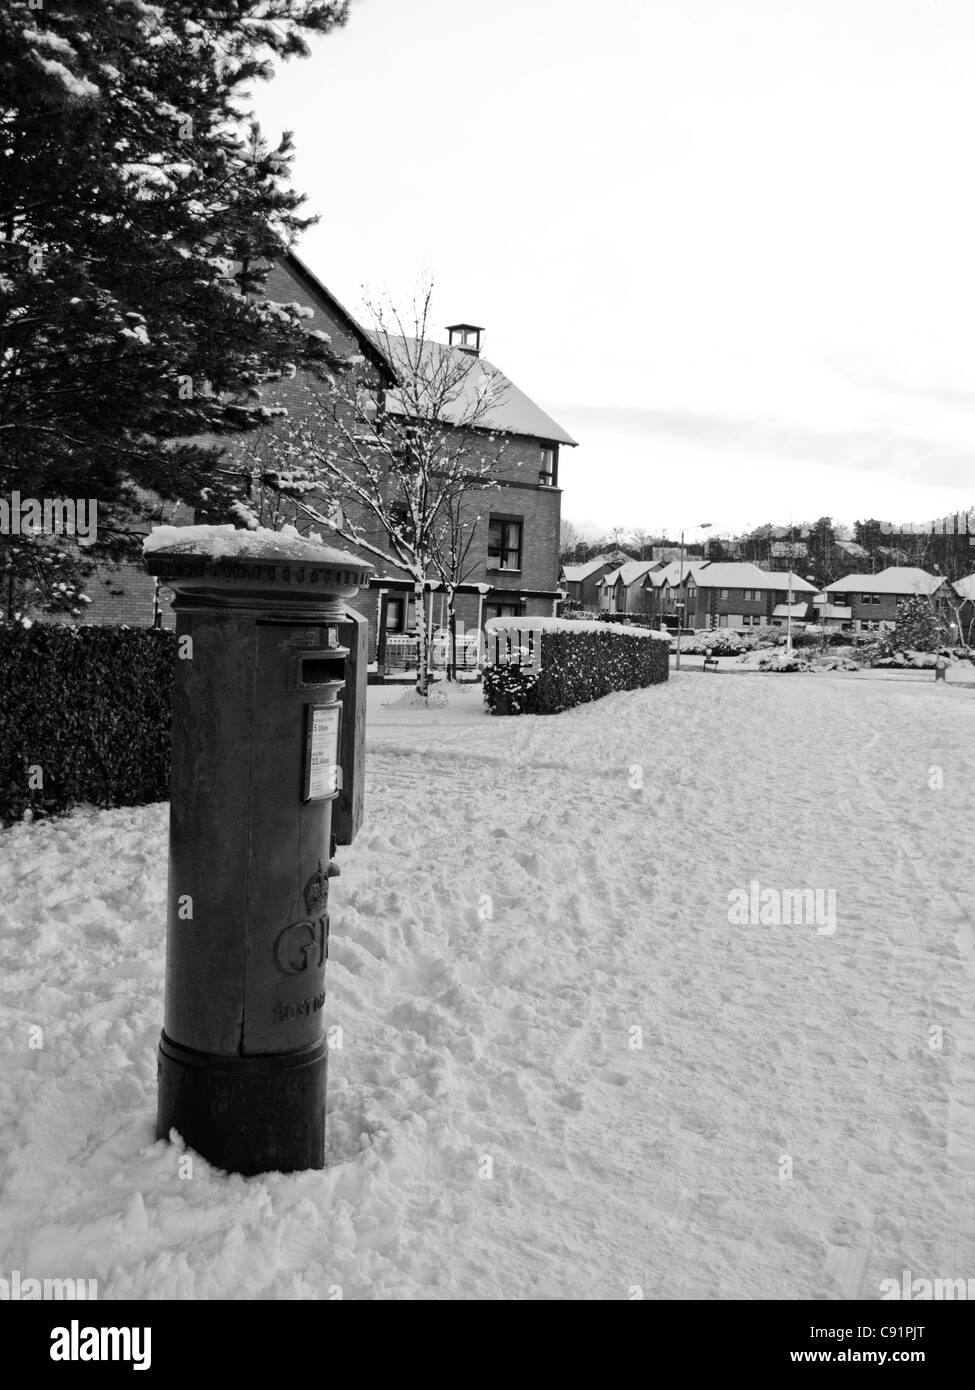 post box in suburbia winter 2010 Stock Photo